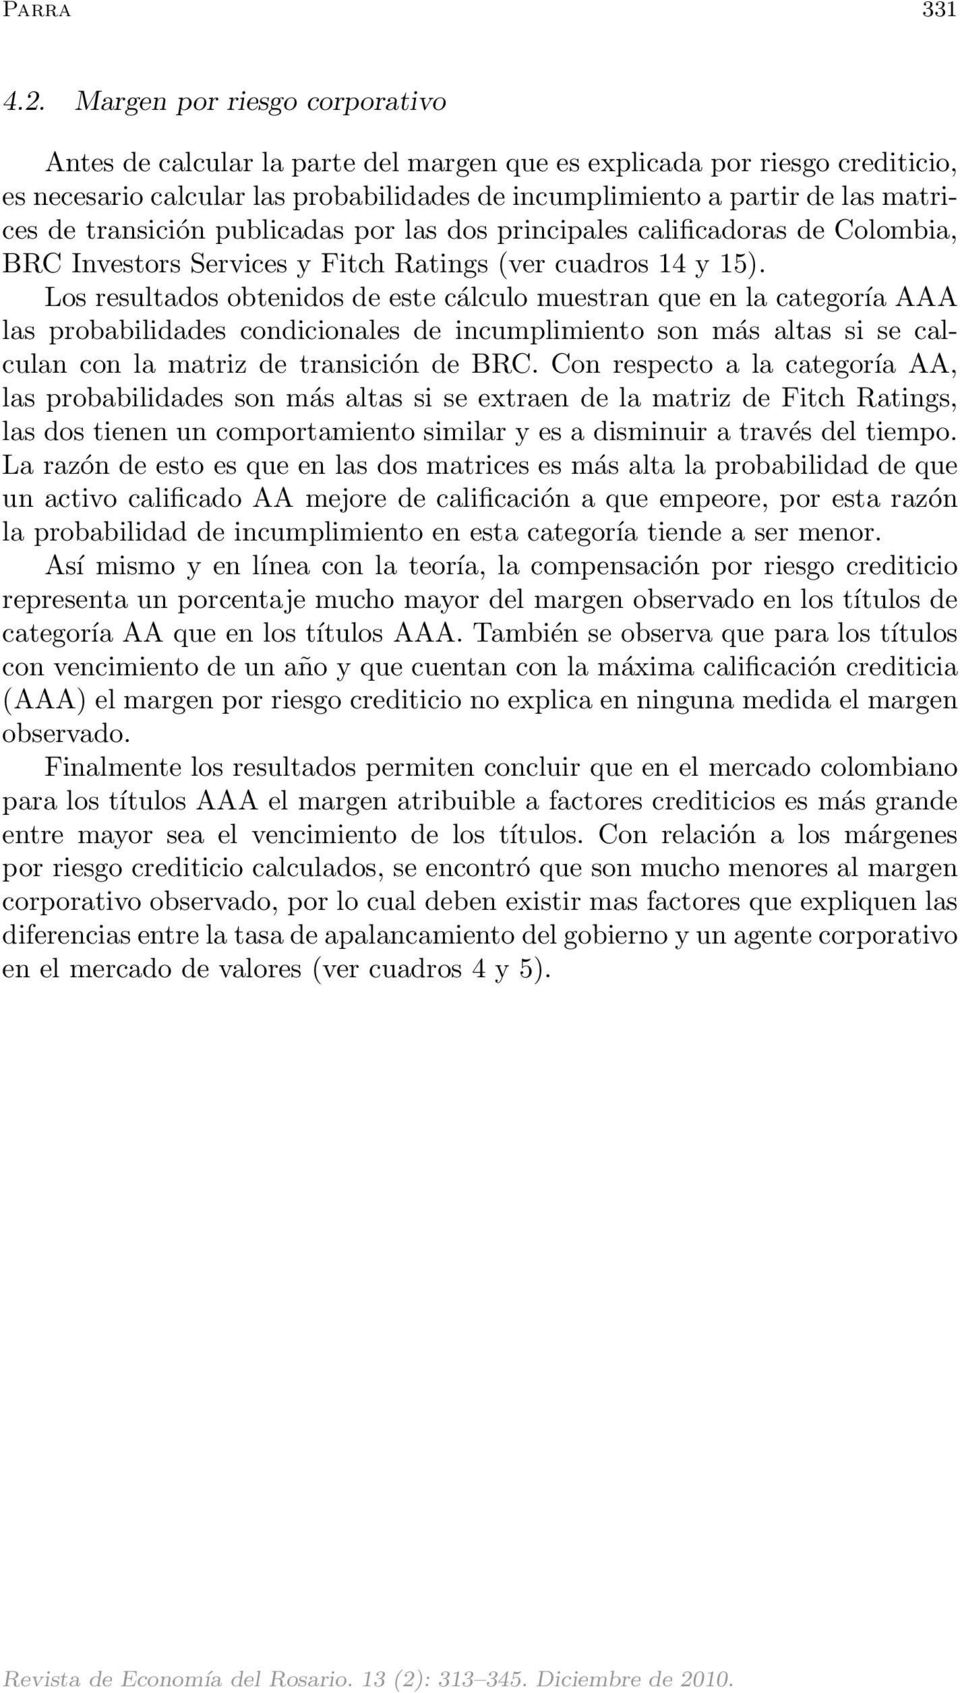 transición publicadas por las dos principales calificadoras de Colombia, BRC Investors Services y Fitch Ratings (ver cuadros 14 y 15).